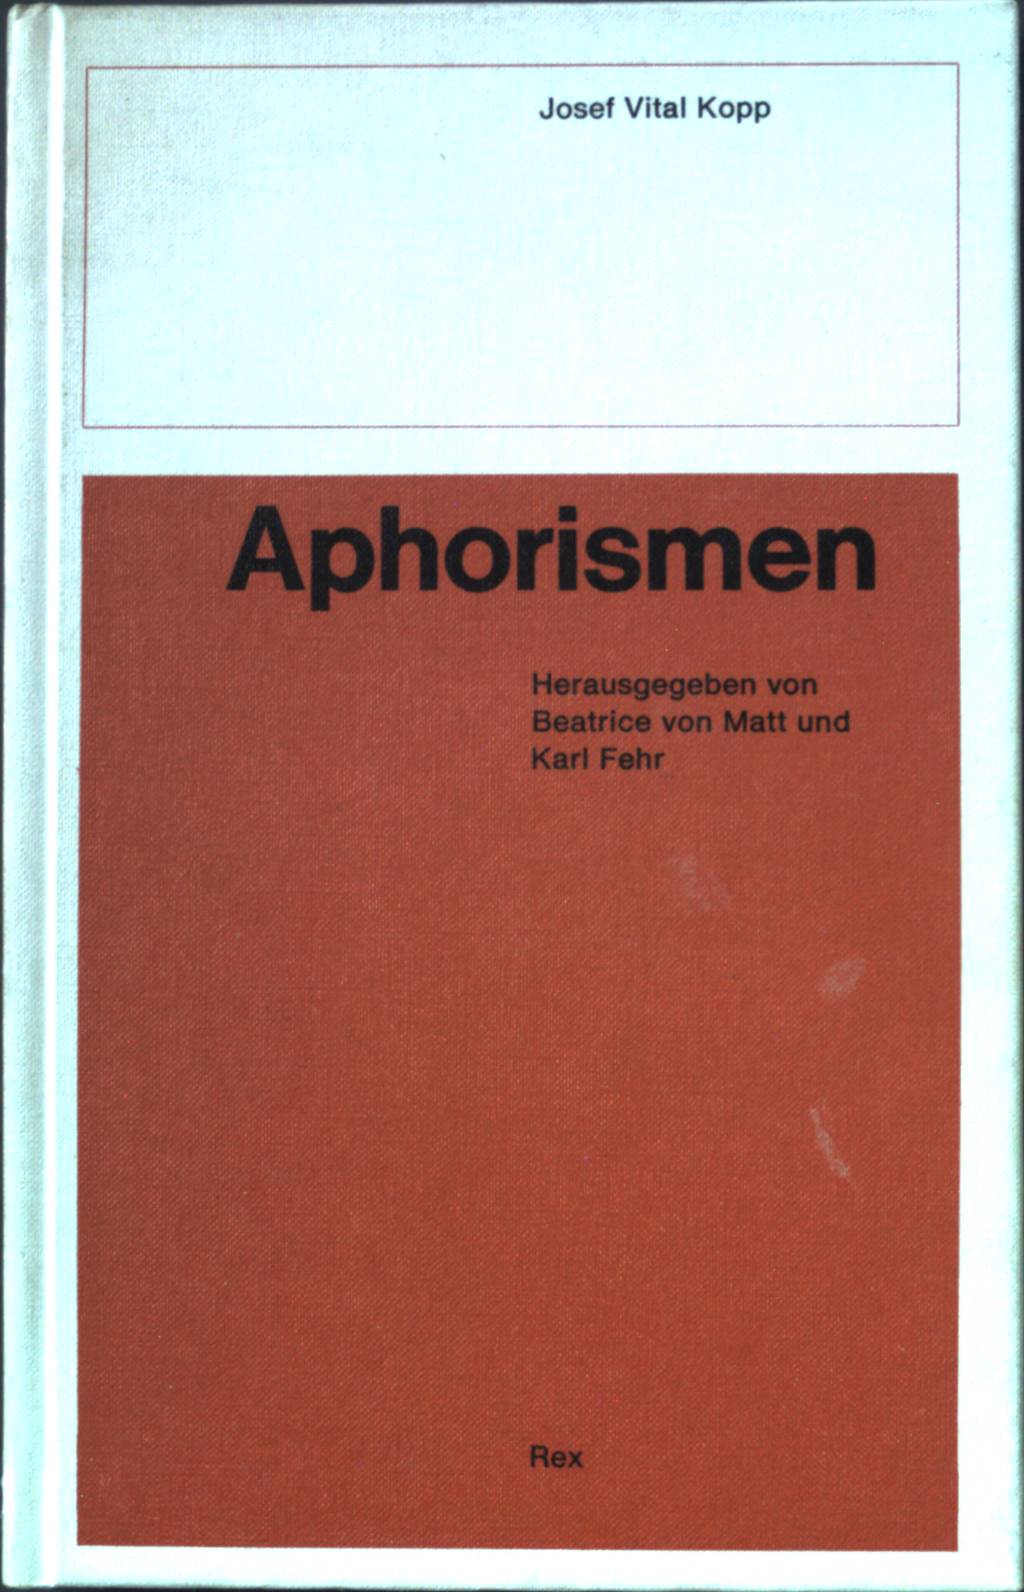 Aphorismen. - Kopp, Josef Vital, Beatrice von Matt und Karl Fehr